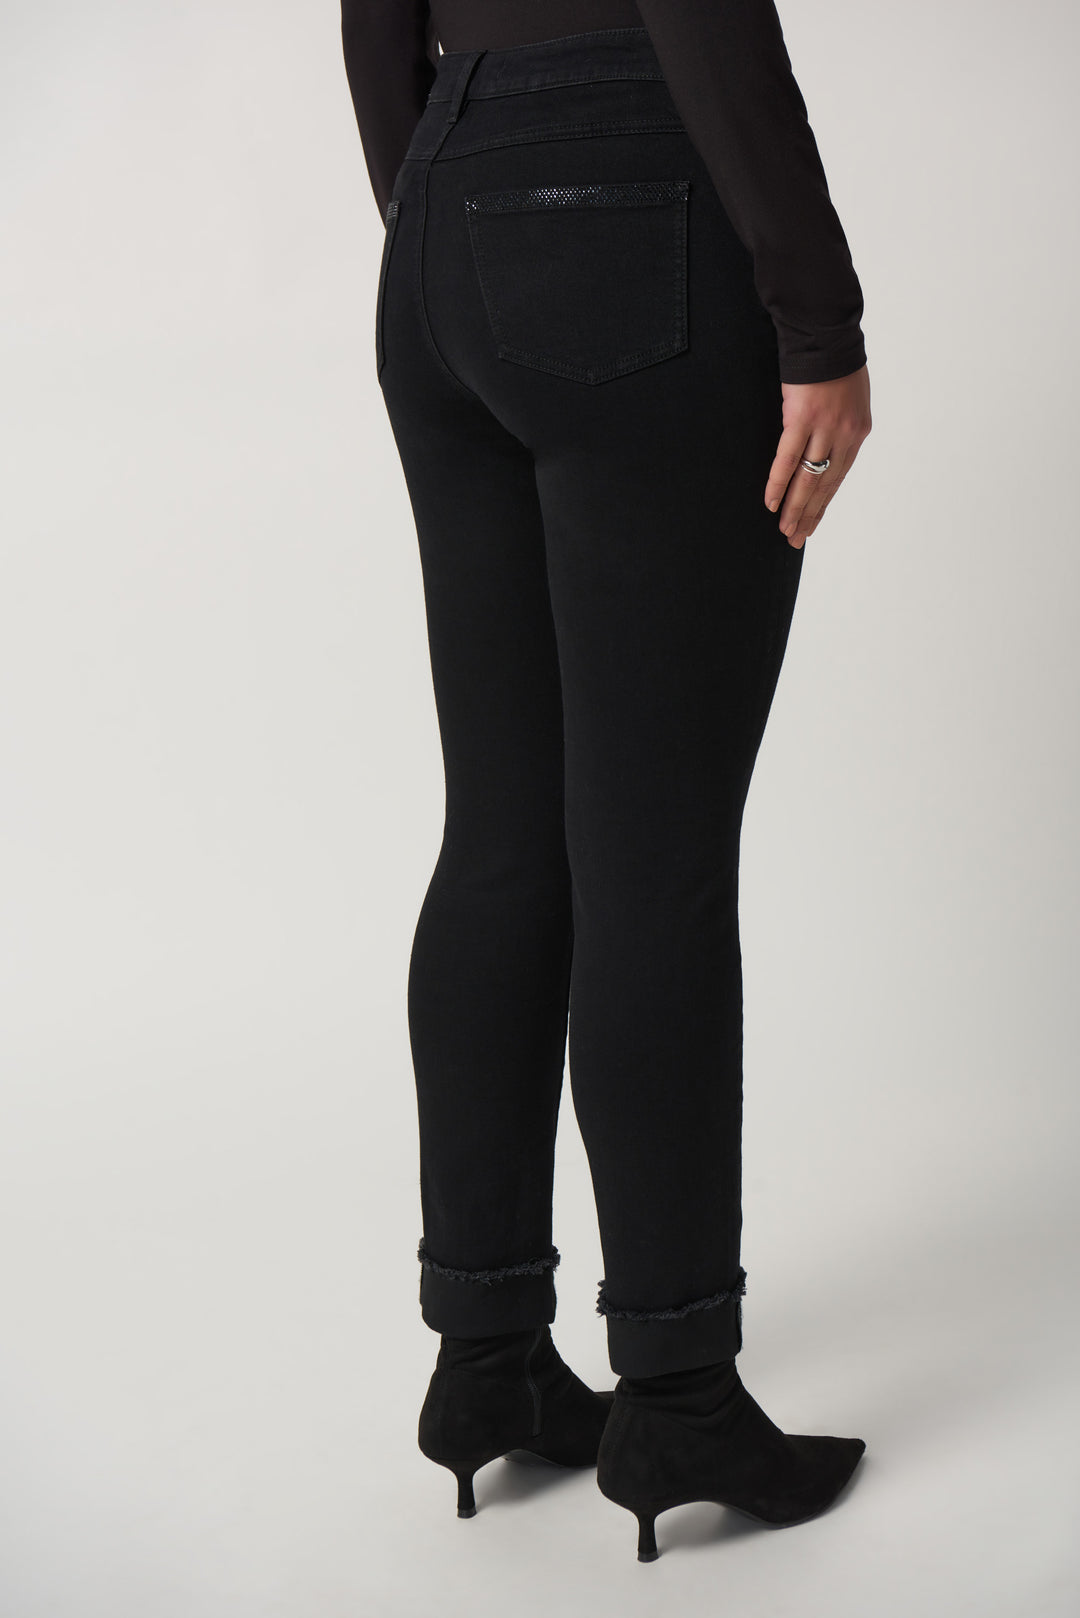 Joseph Ribkoff Fall 2023 women's slim fit black denim jeans - back